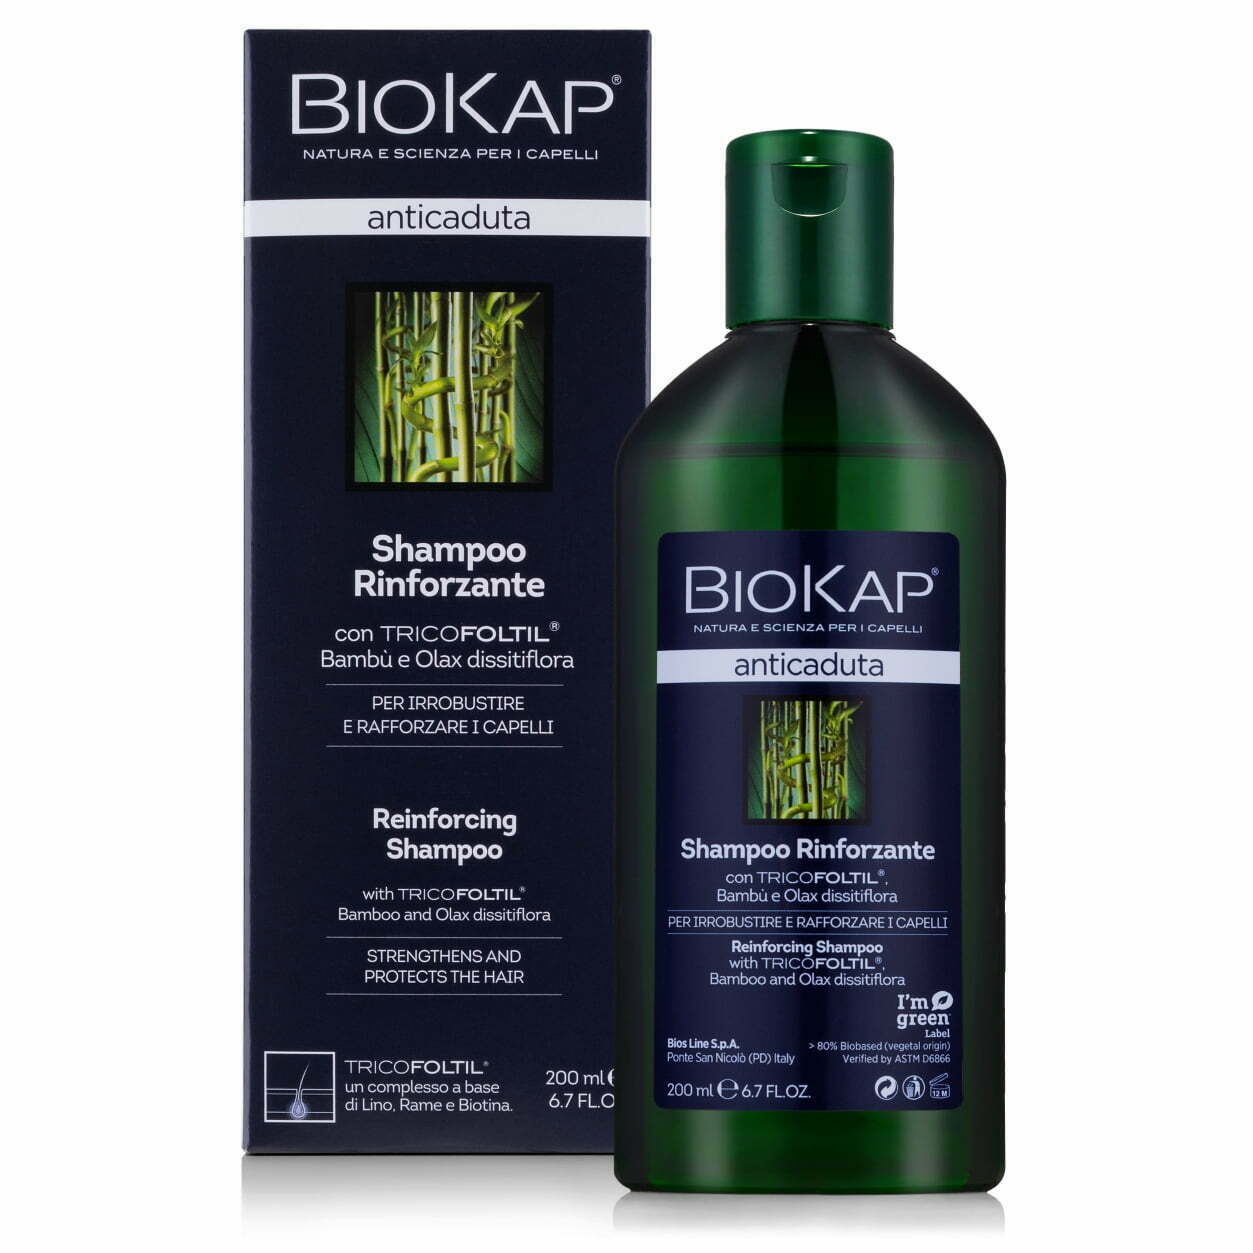 szampon bio natural przeciwwypadaniu wlosow